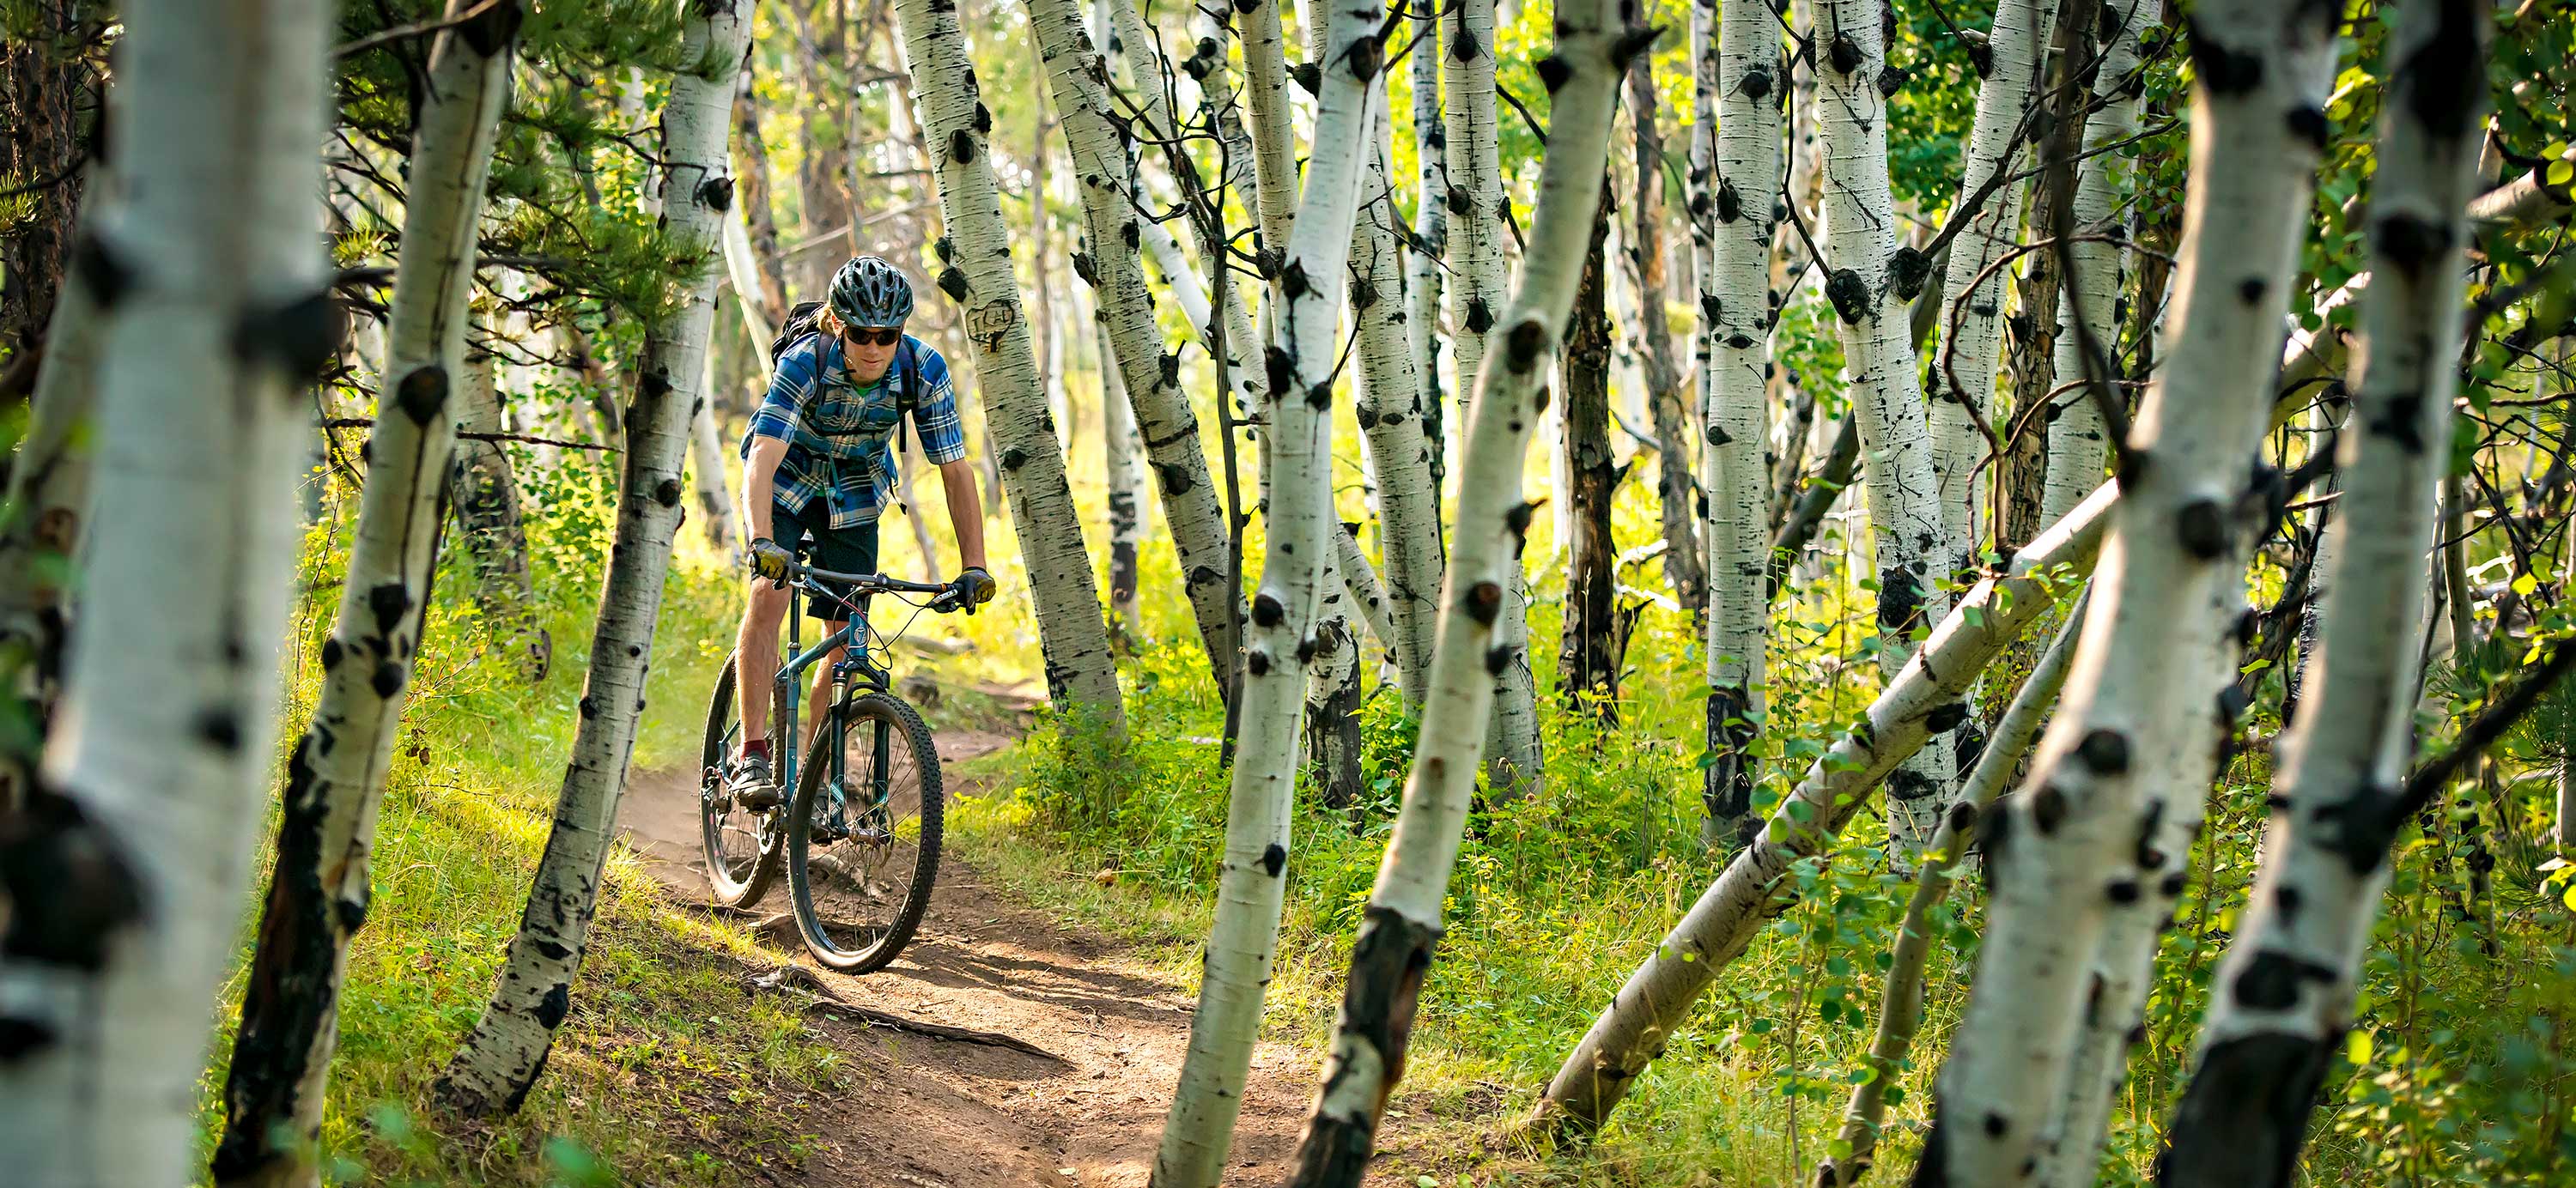 Mountain biker in trees